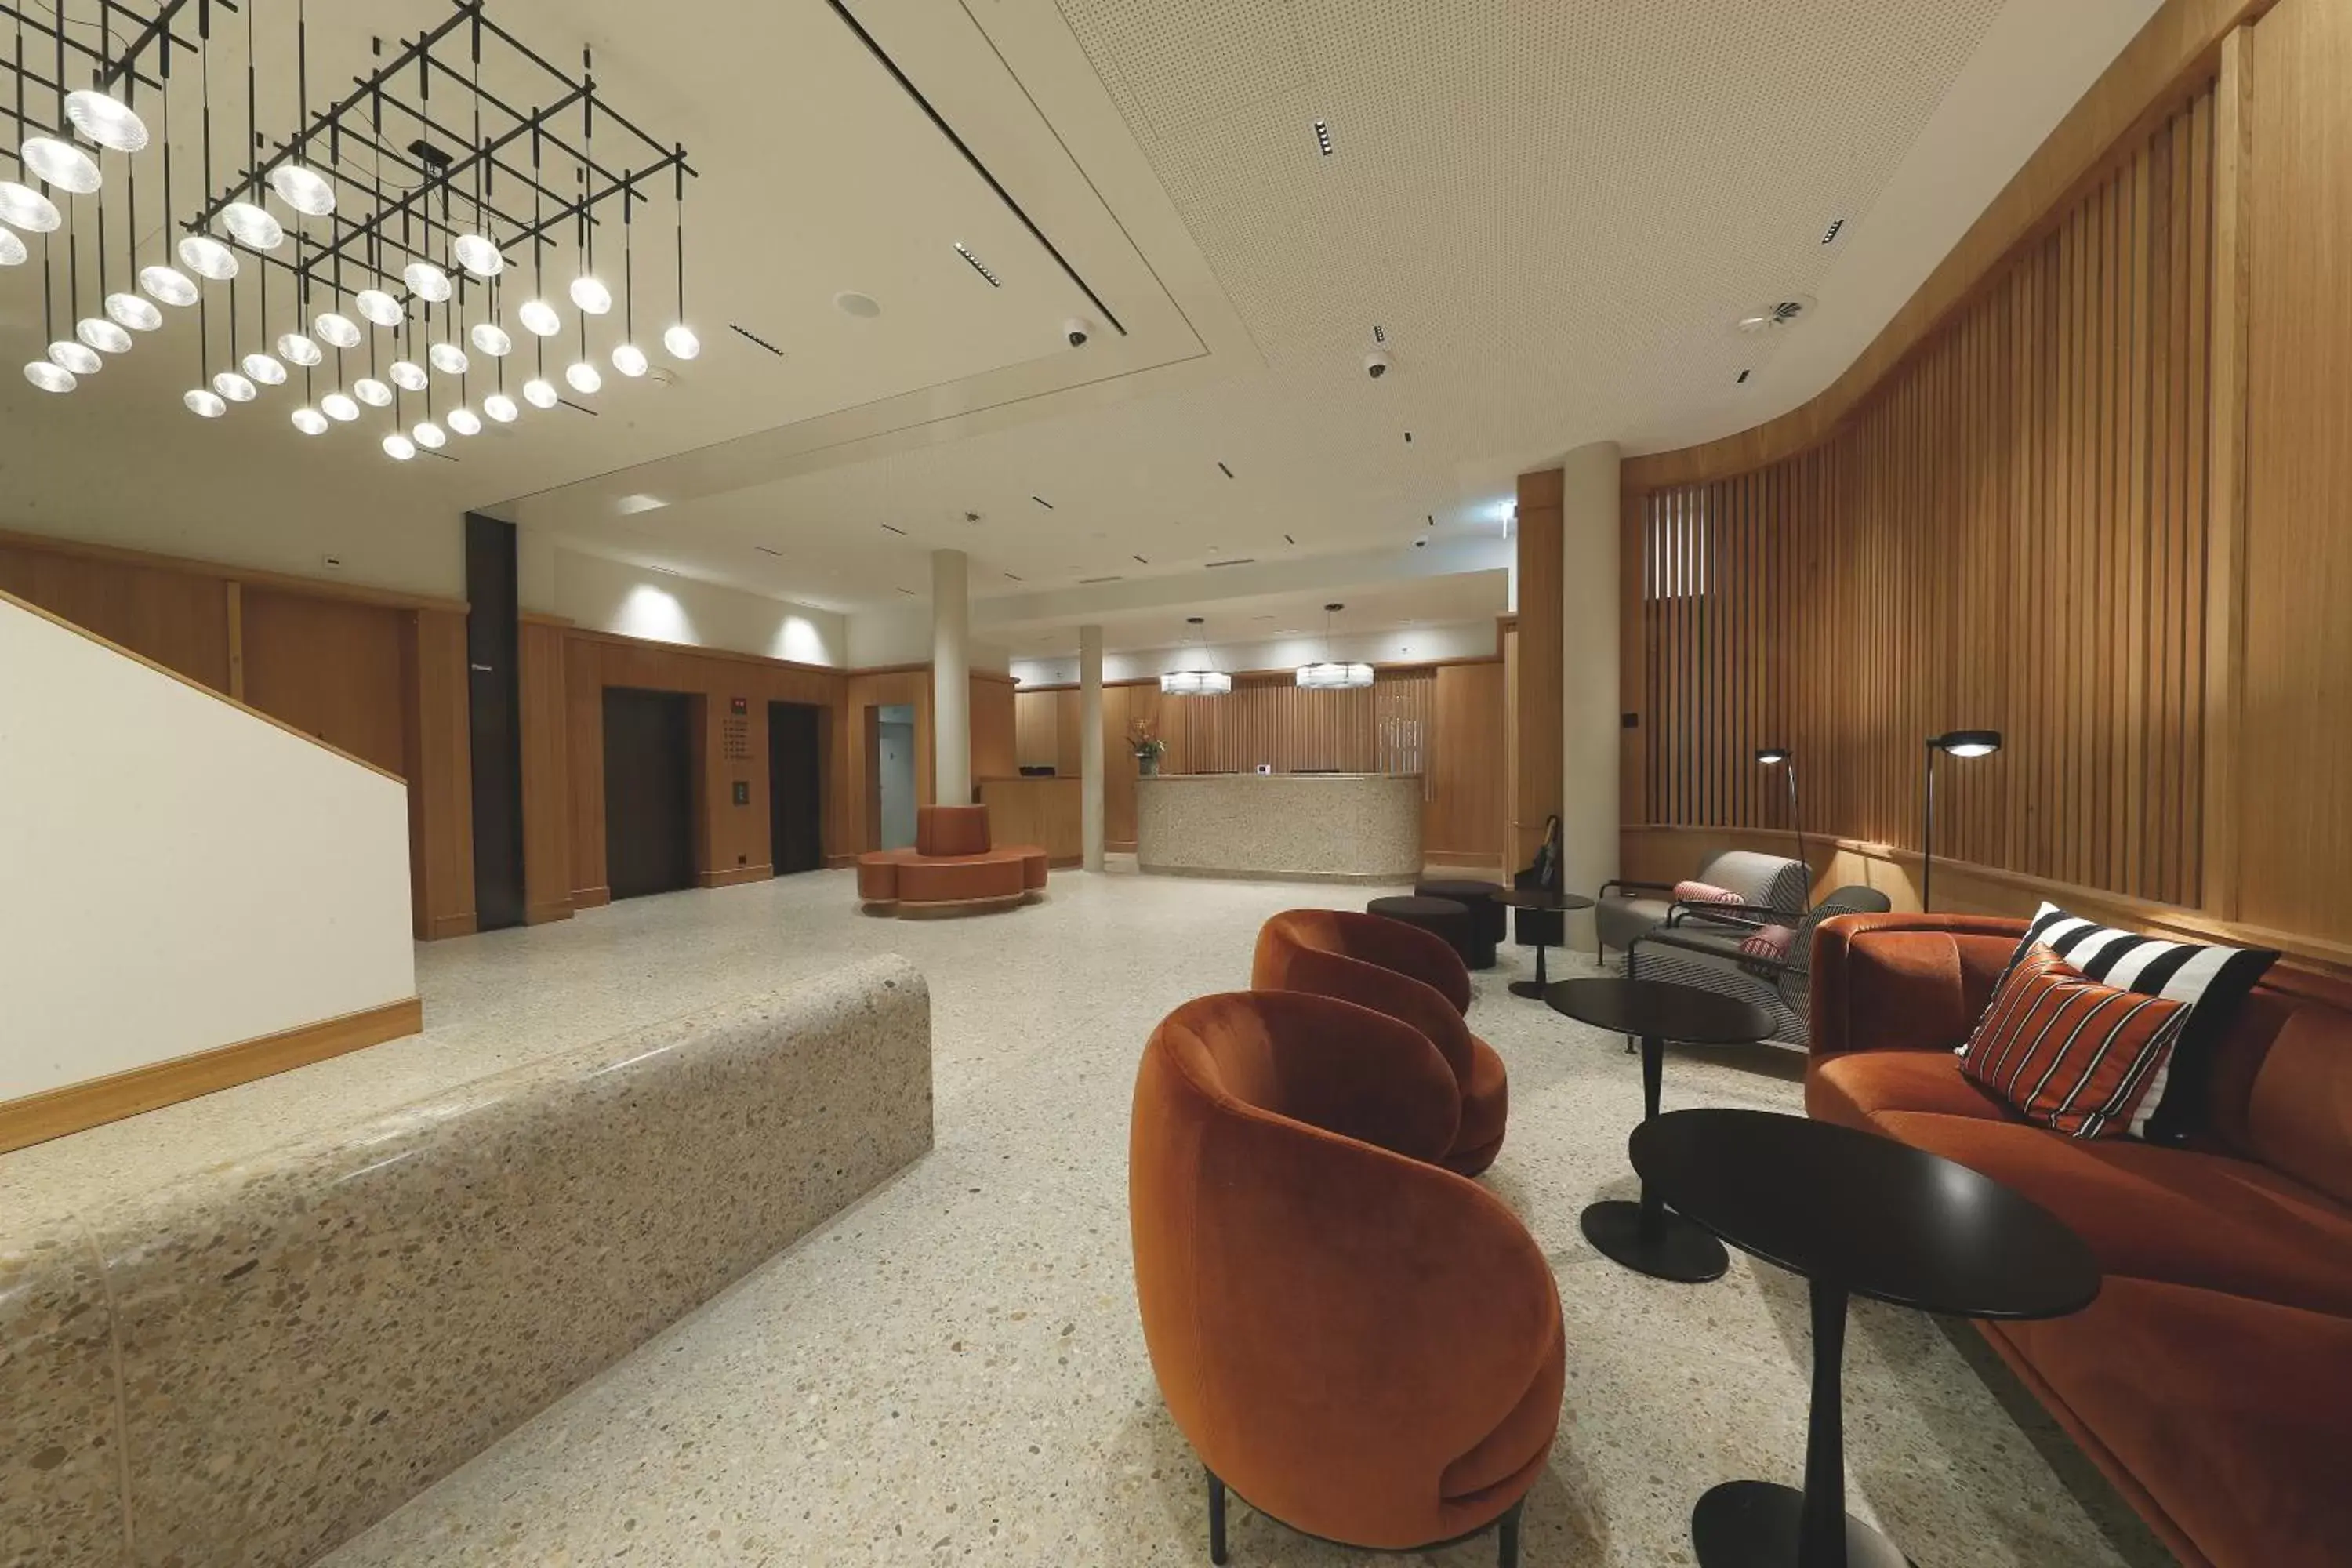 Lobby or reception, Lobby/Reception in Best Western Plus Hotel Bern